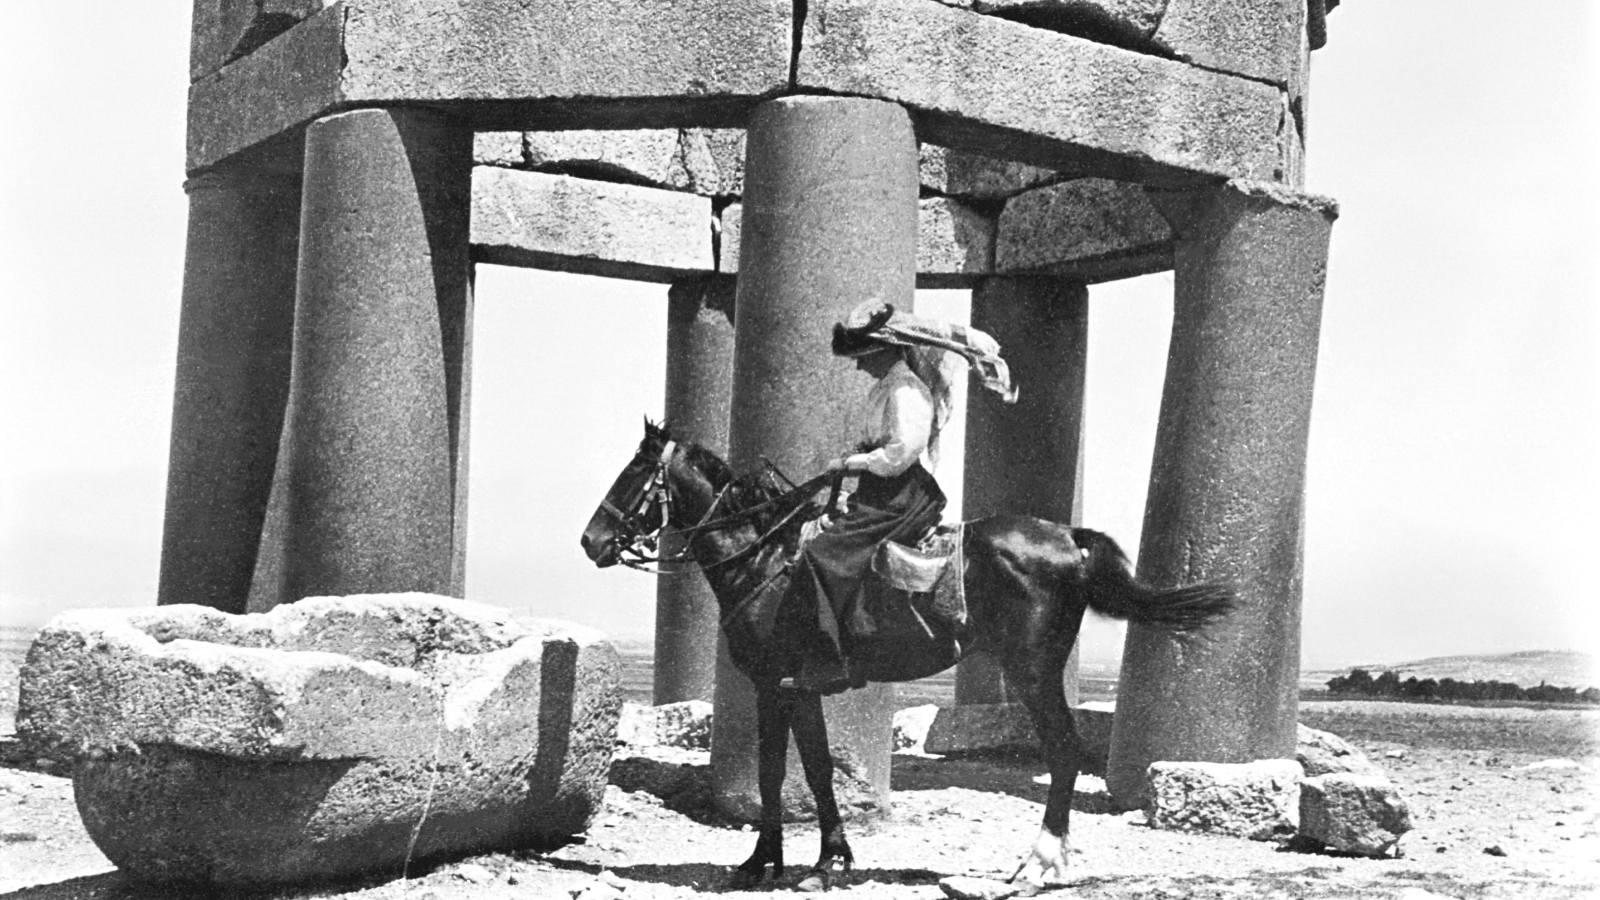 Kuvassa on ratsastaja, jolla on arabipäähine.  Taustalla on isoista kivipylväistä tehty kuusikulmainen rakennelma ja edessä on kivinen vesiallas.  Kuva on musta-valkoinen.